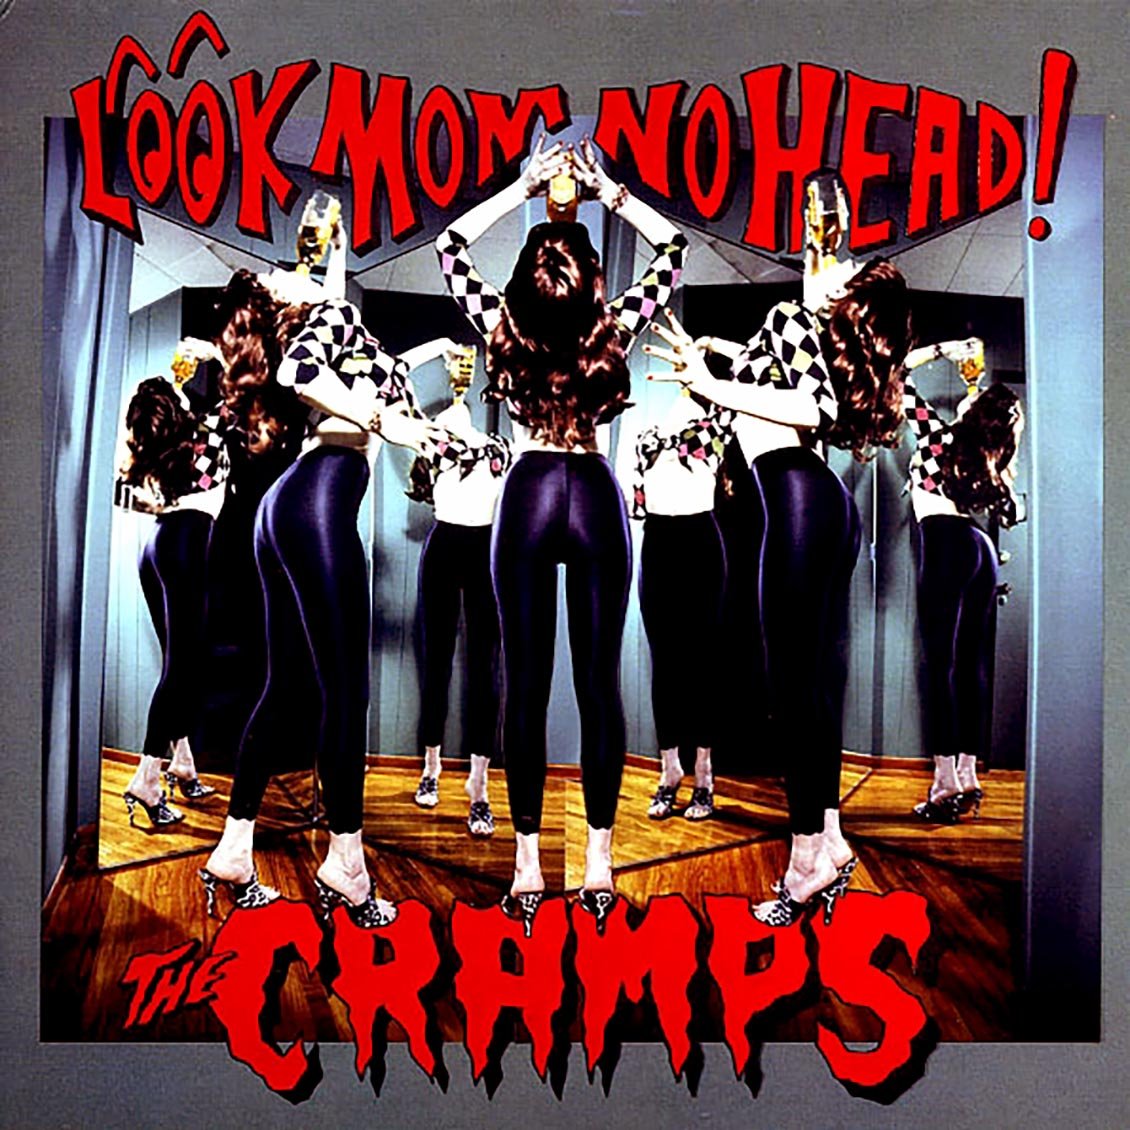 The Cramps "Look Mom No Head!" LP (180g/Import)